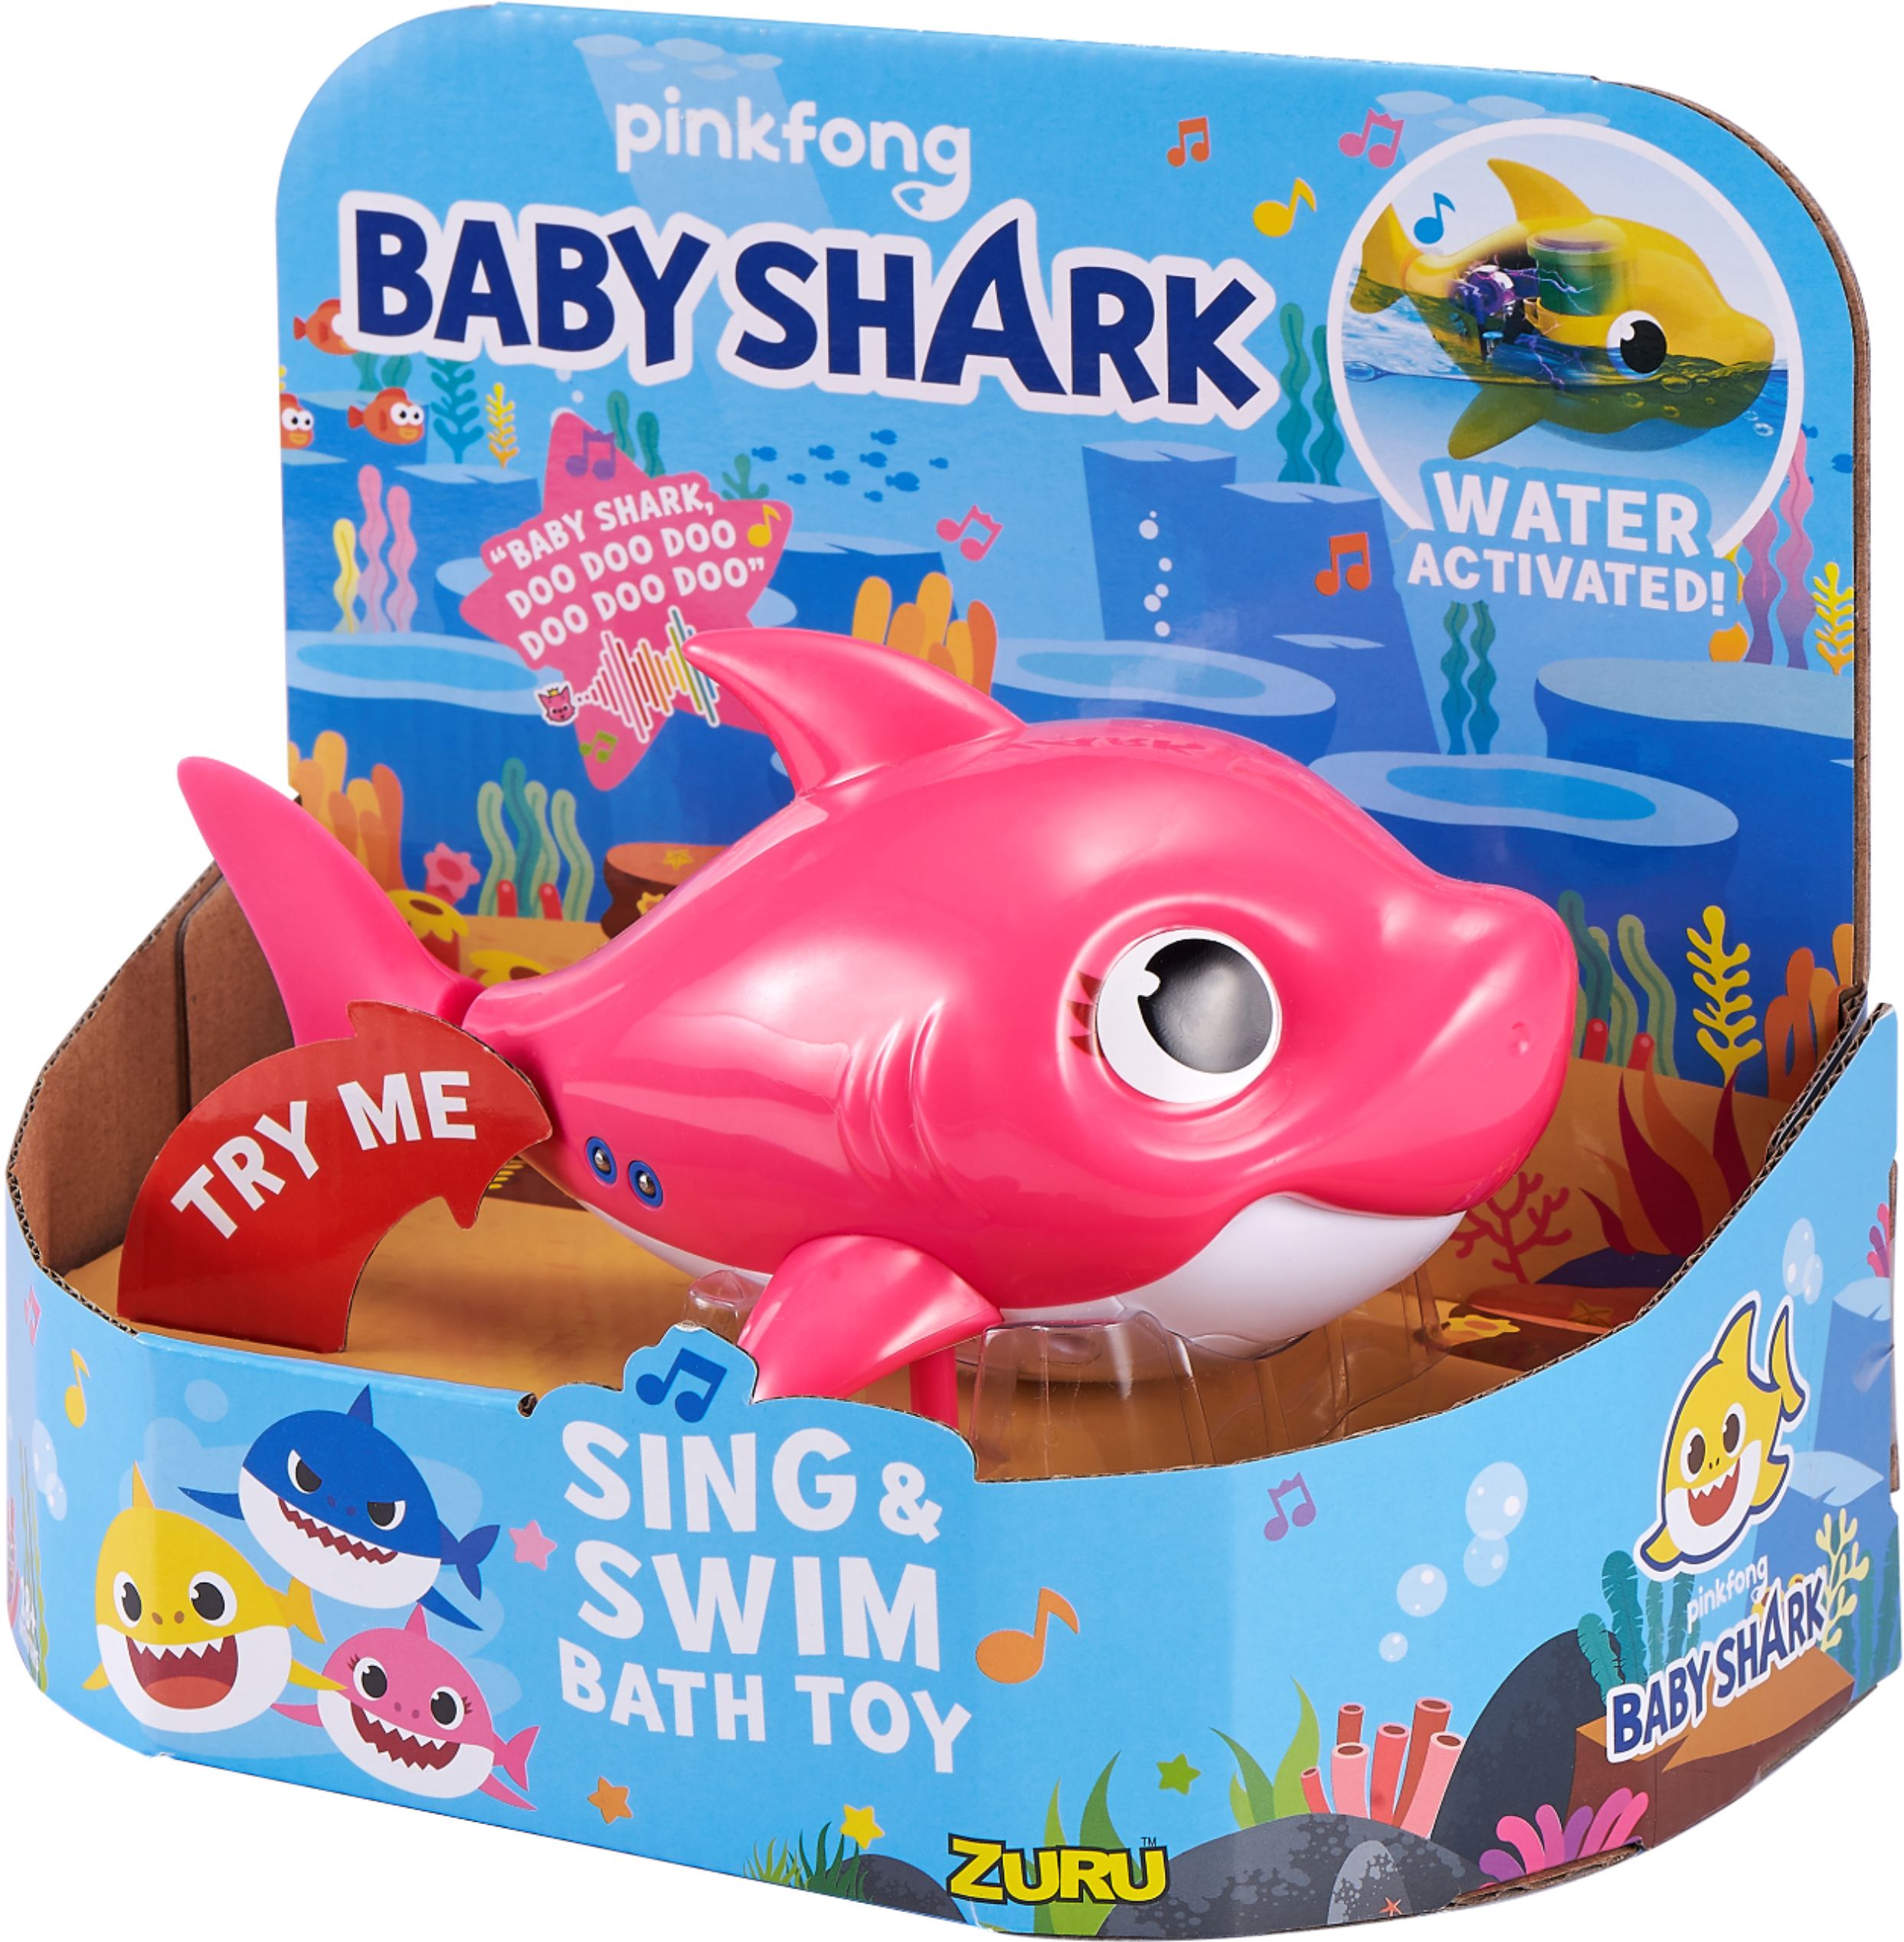 ZURU 25282-S003 Baby Shark Sing and Swim Bath Toy for sale online 